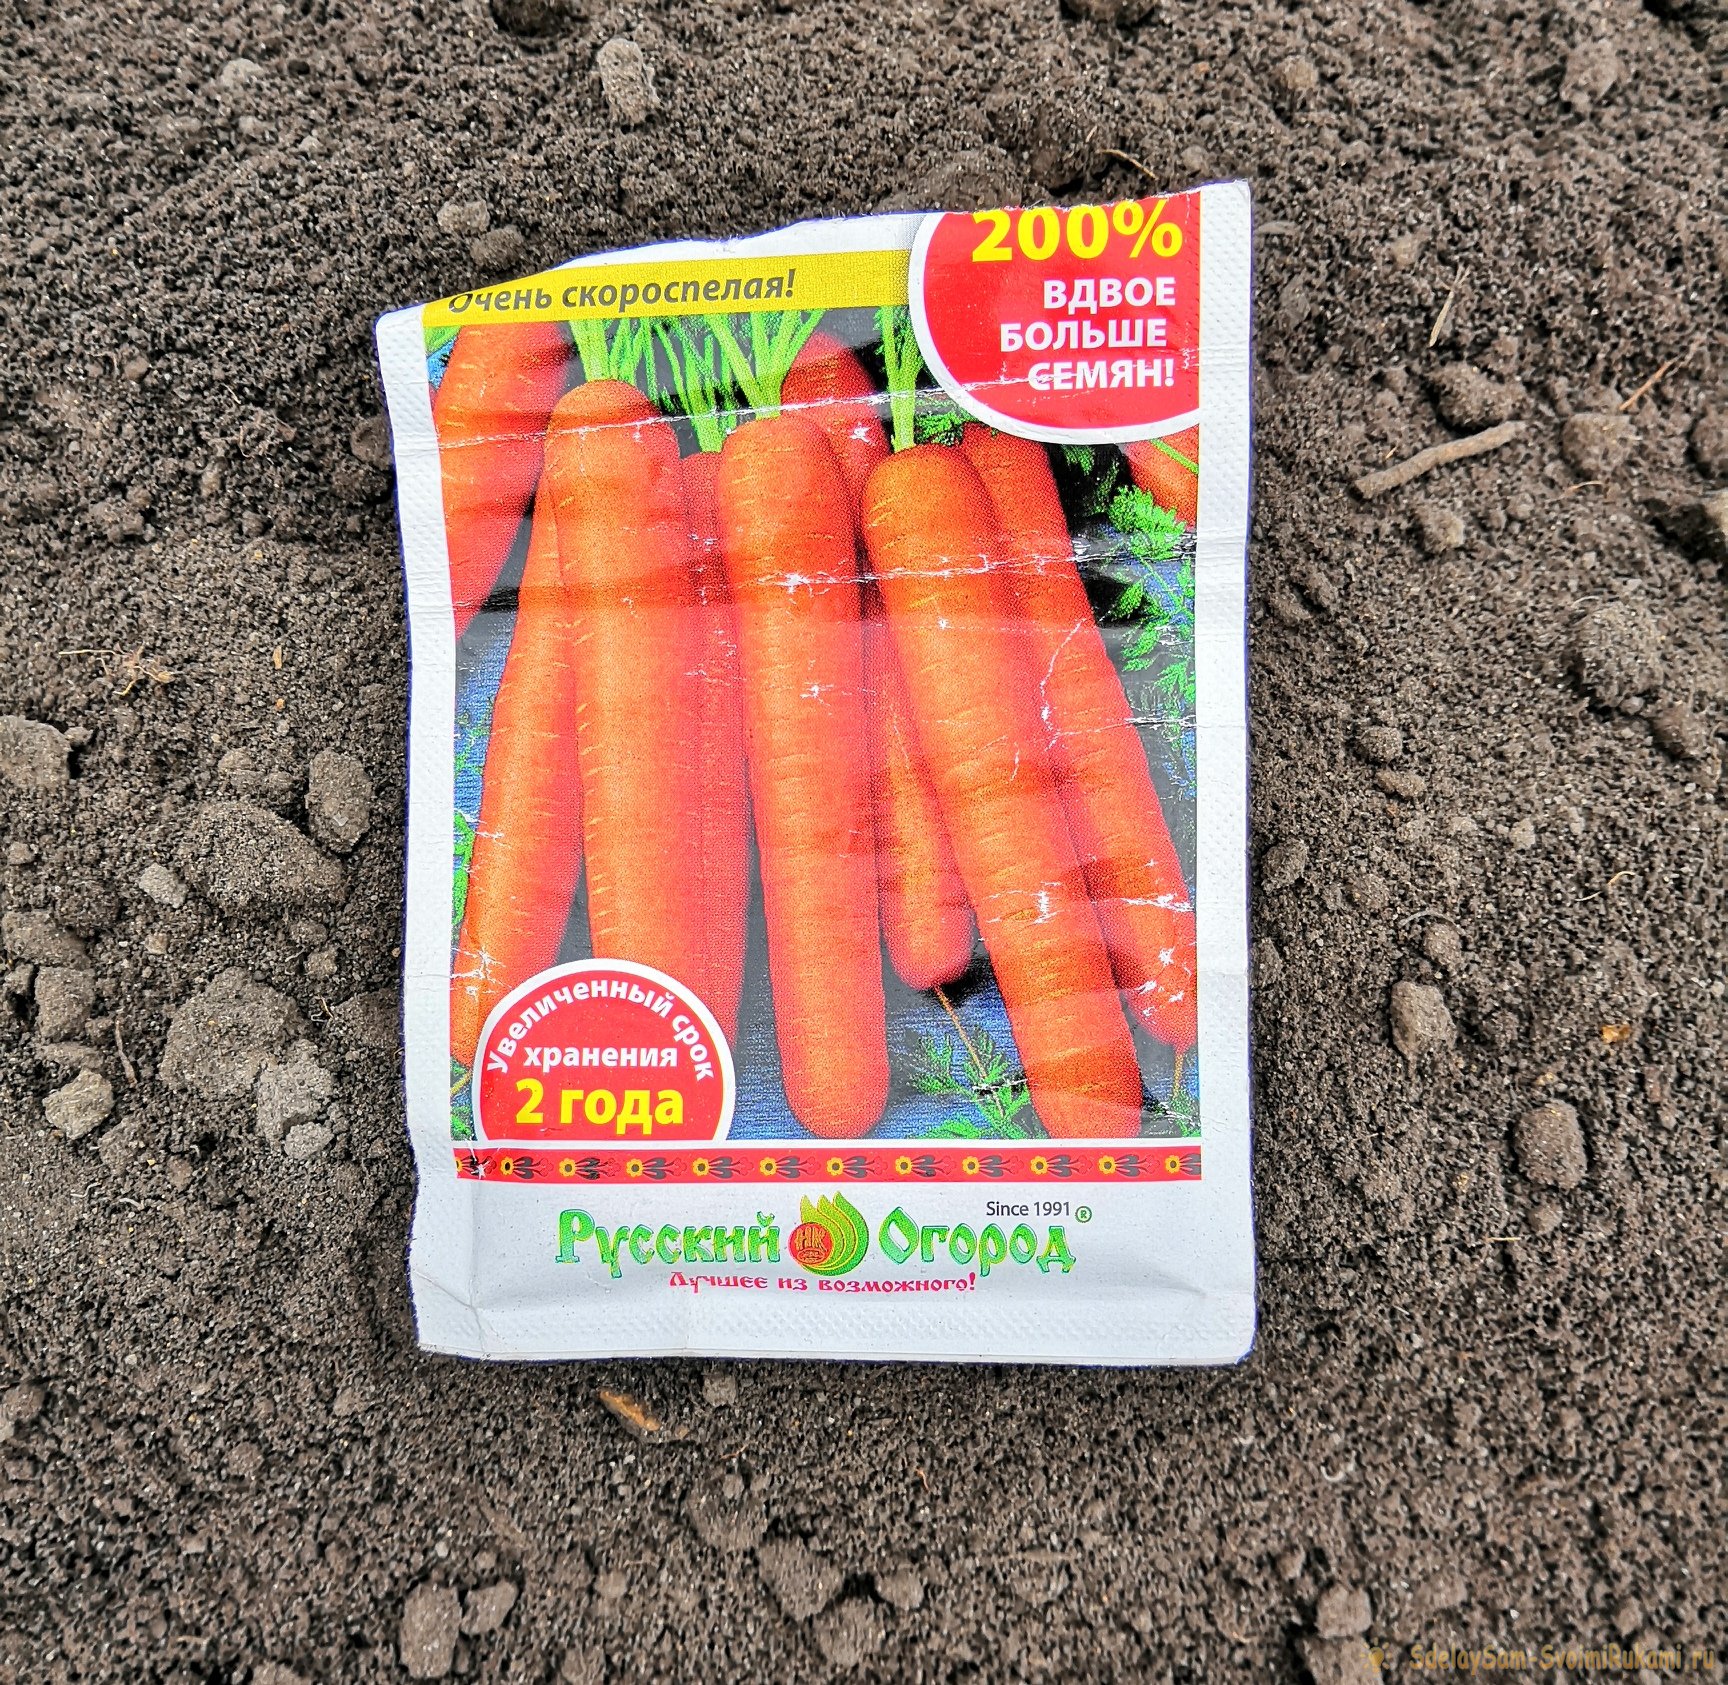 Как существенно облегчить посадку моркови при помощи туалетной бумаги